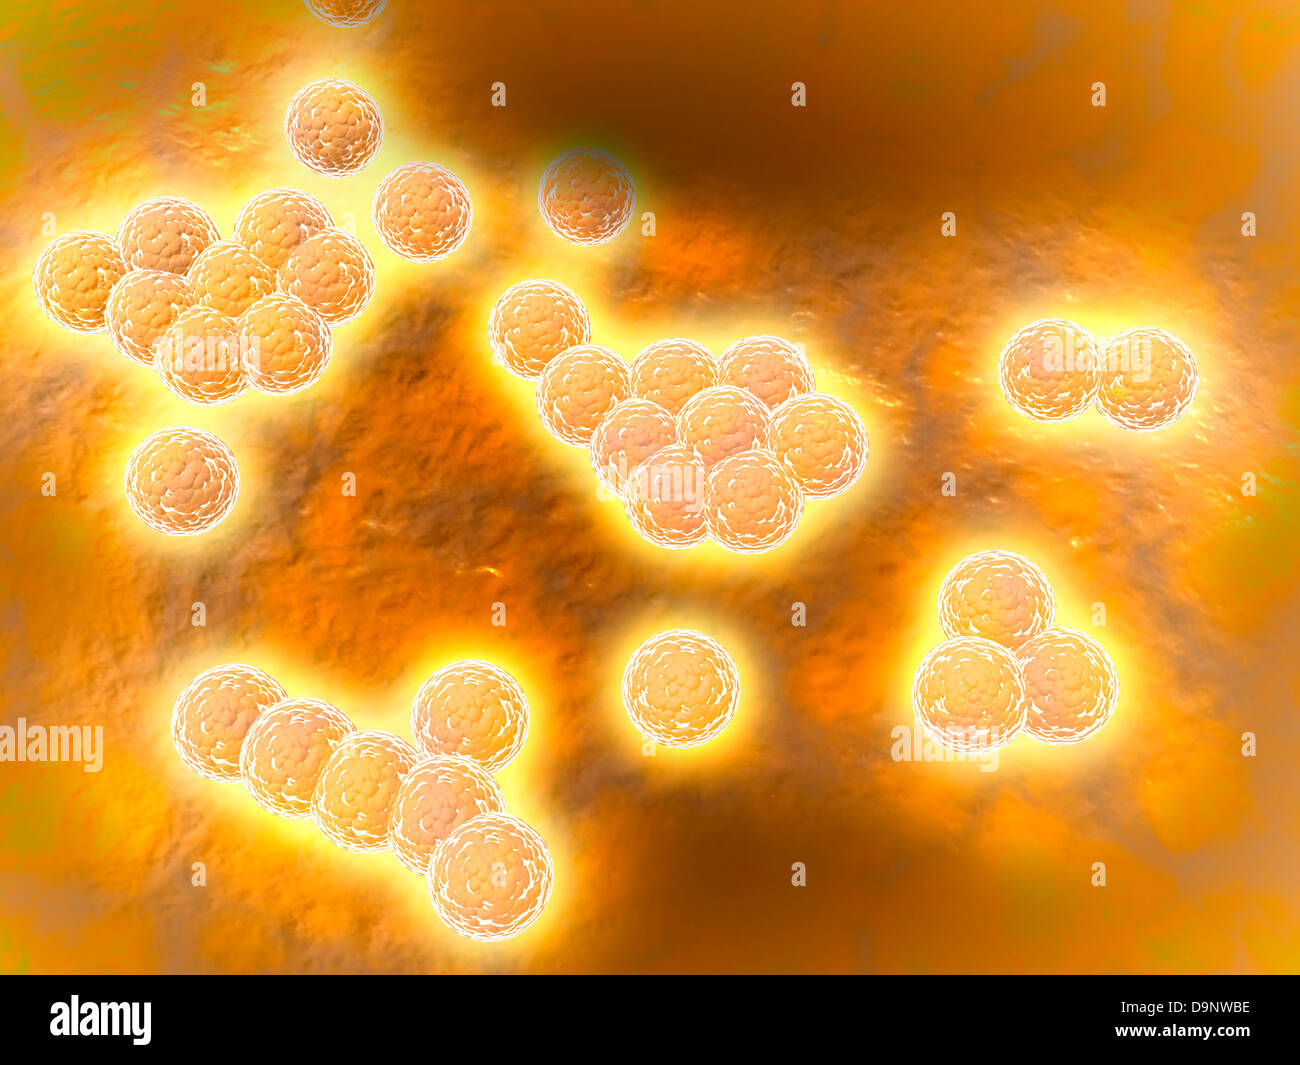 Microscopic view of Methicillin-resistant Staphylococcus aureus. Stock Photo